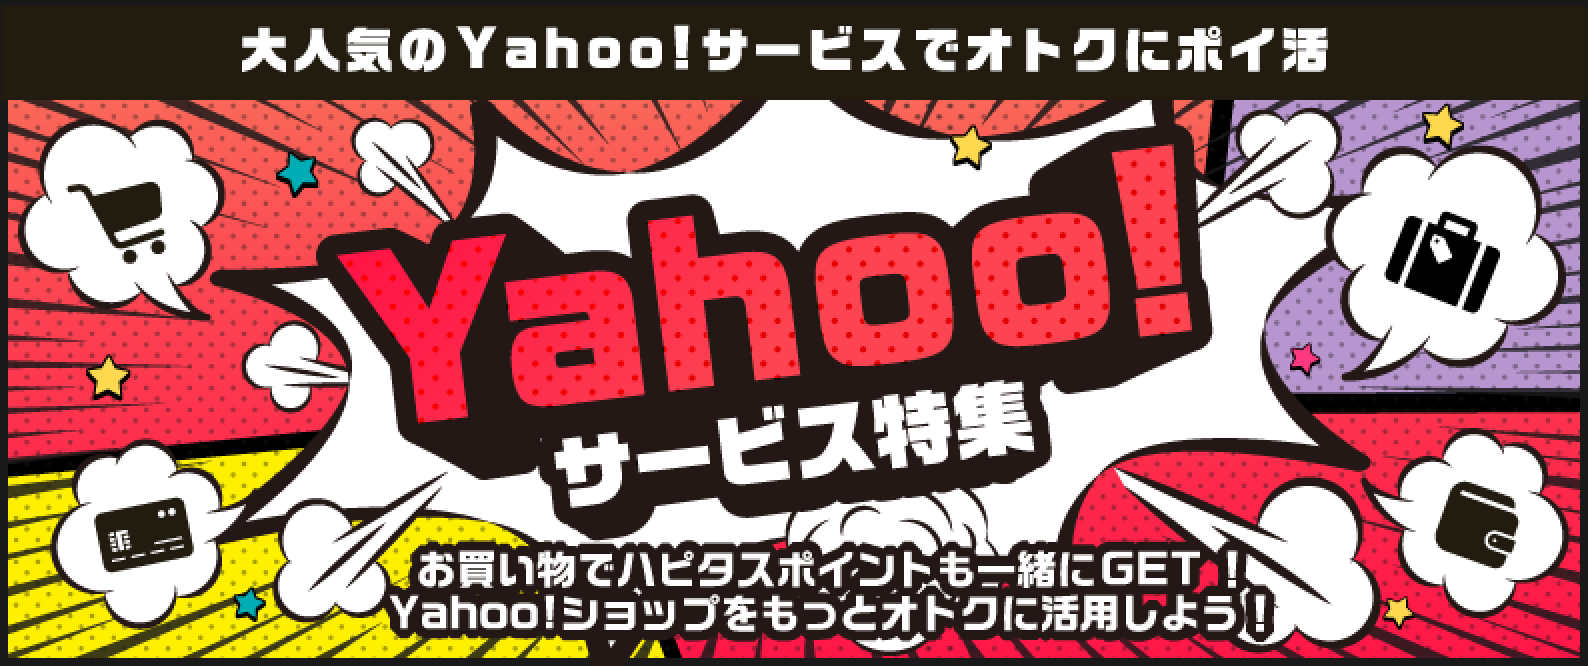 「Yahoo!サービス特集！」お買い物でハピタスポイントも一緒にゲット！Yahoo!ショップをもっとお得に活用しましょう！PayPay（ペイペイ）やYahoo!系サービスを使うなら、ハピタス経由でポイント二重取りが当たり前！●みんなが利用する定番サービス！：Yahoo!ショッピング：商品購入で1%、【国内宿泊】Yahoo!トラベル：宿泊完了（WEB予約）で0.7%、ニトリ（Yahoo!ショッピング店）：商品購入で1%、PayPay銀行（旧ジャパンネット銀行）：口座開設で1,500pt、PayPayカード：新規カード発行で2,800pt、【新規利用限定】PayPayグルメ：新規予約＋実来店で200pt、LOHACO（ロハコ）：商品購入で0.6%